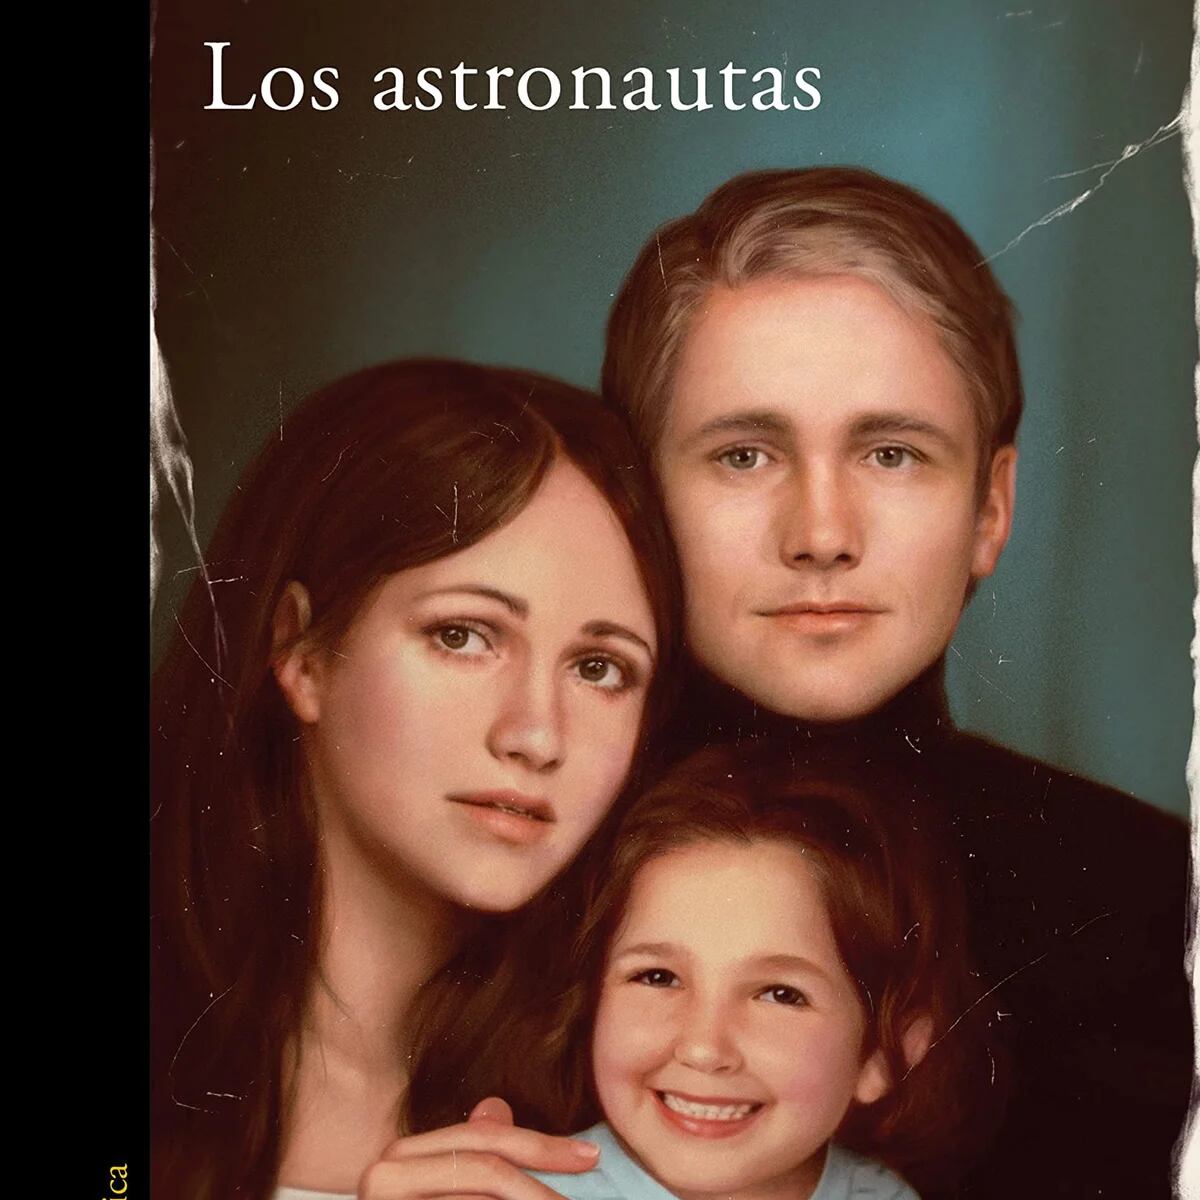 Lee en primicia las primeras páginas de 'Los astronautas', la nueva novela  de Laura Ferrero que tanto interés mediático ha generado